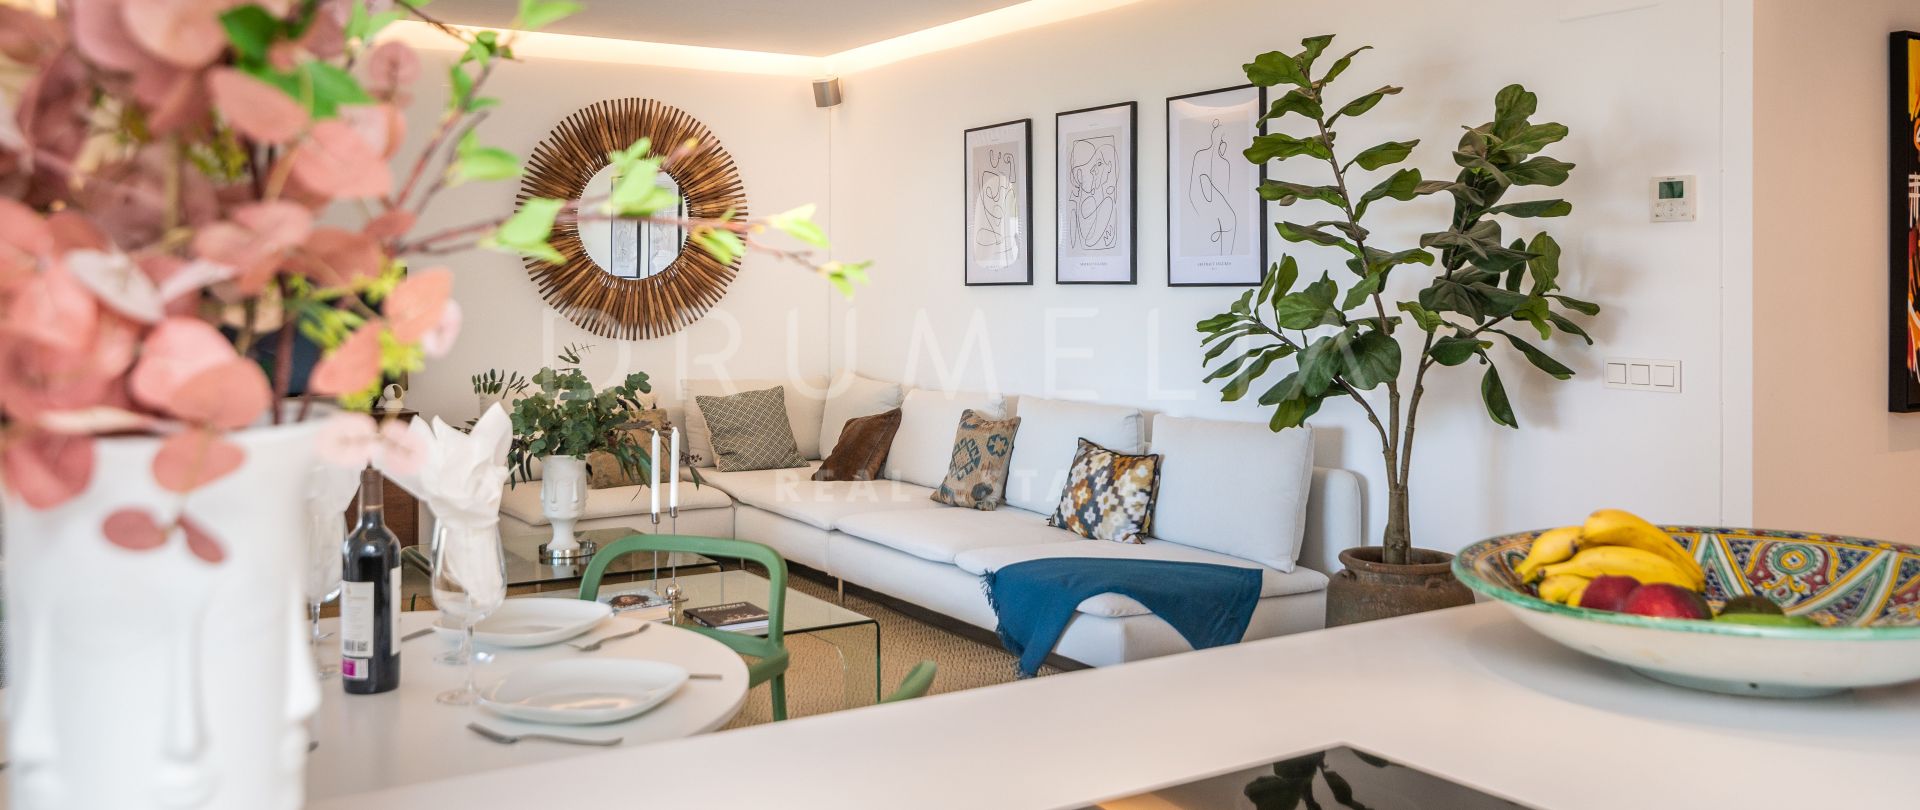 Piękny, nowoczesny apartament w odległości spaceru od plaży, w Royal Banús, Nueva Andalucia, Marbella